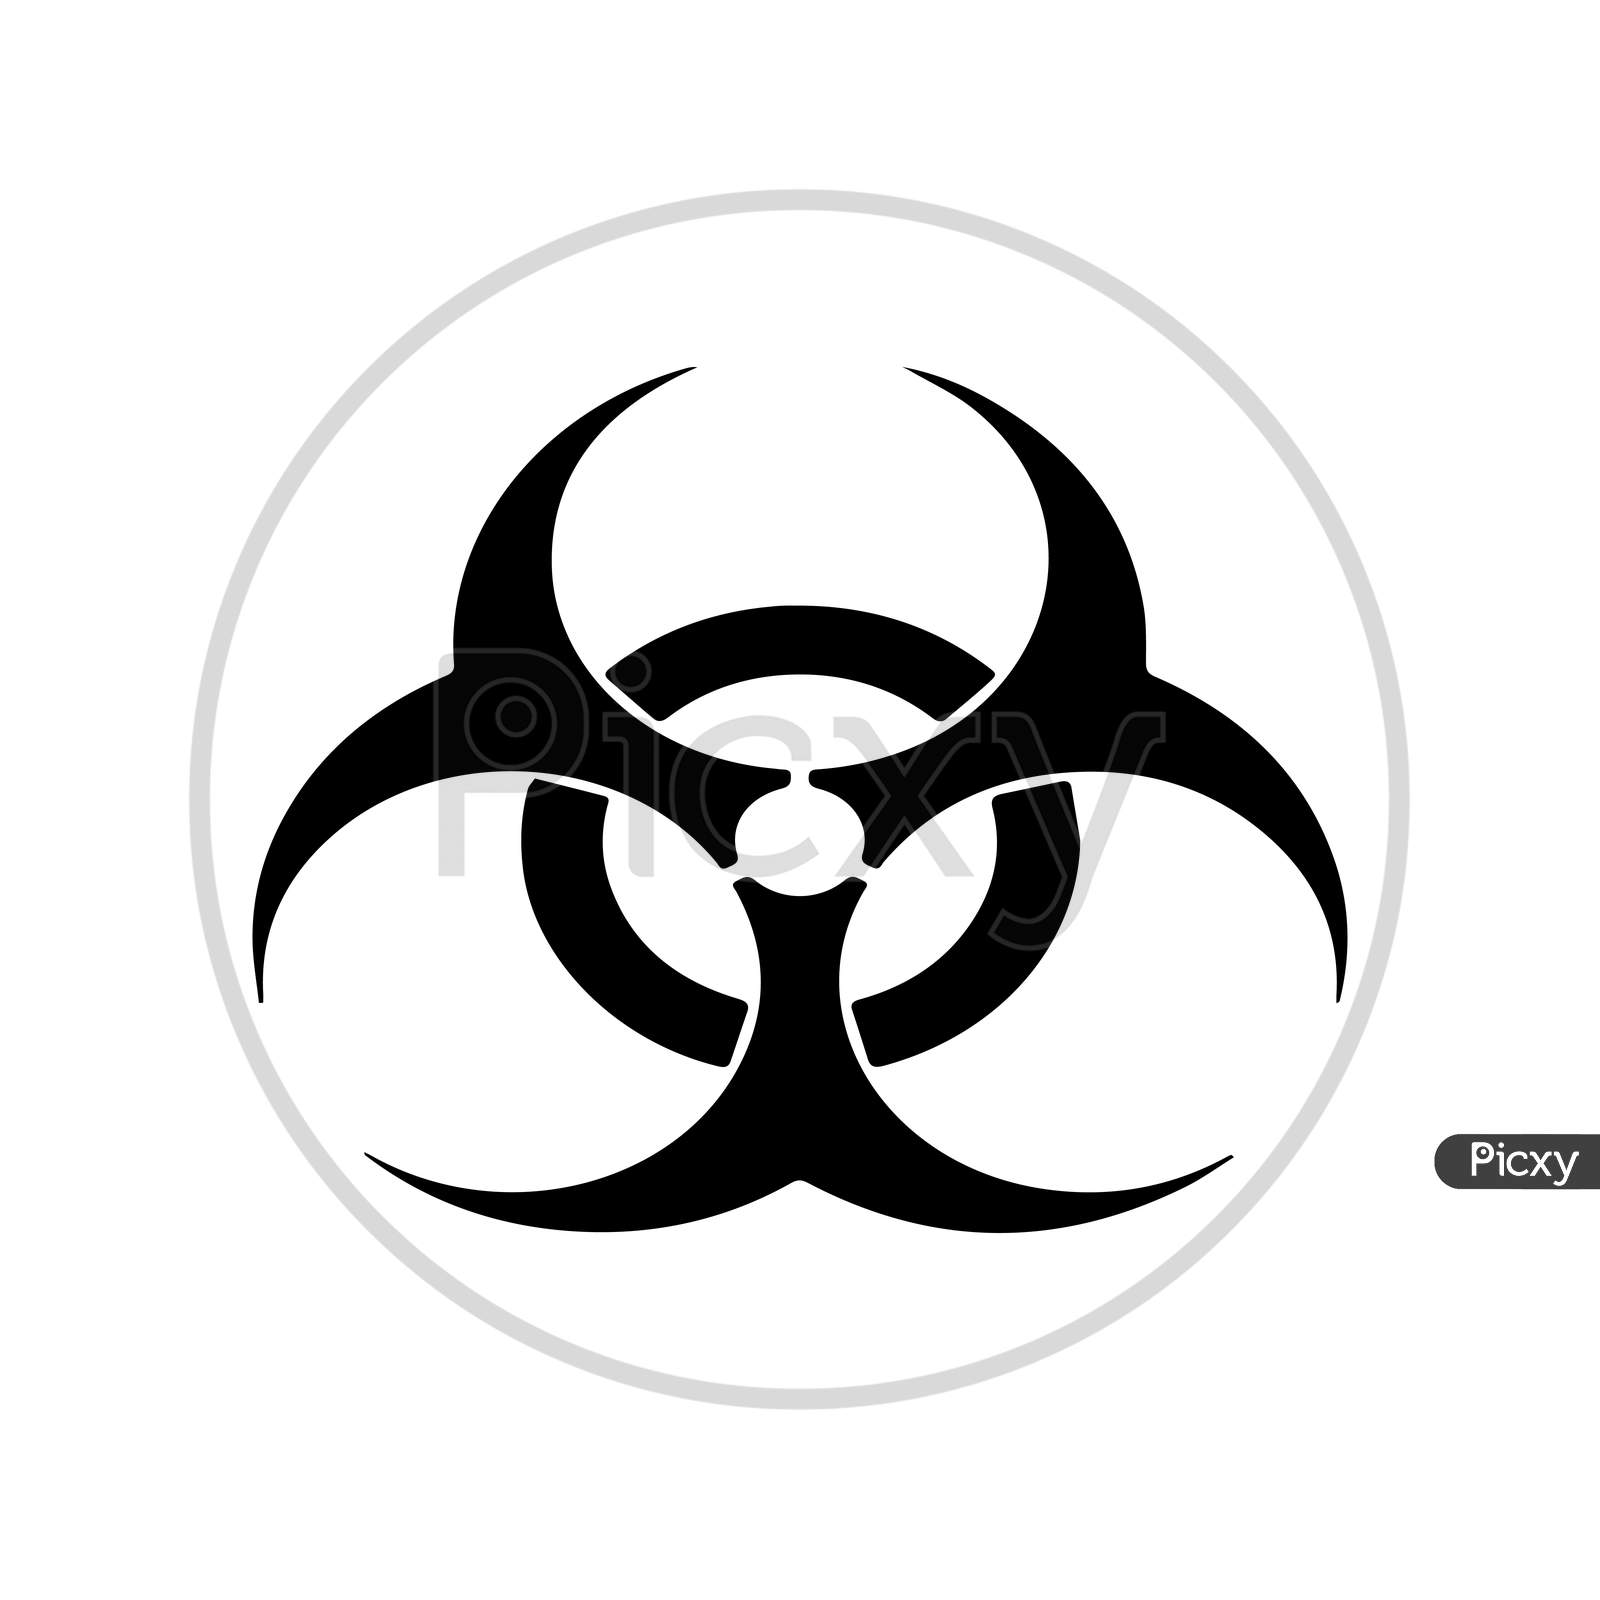 Biohazard Warning Symbol Isolated On White Background.